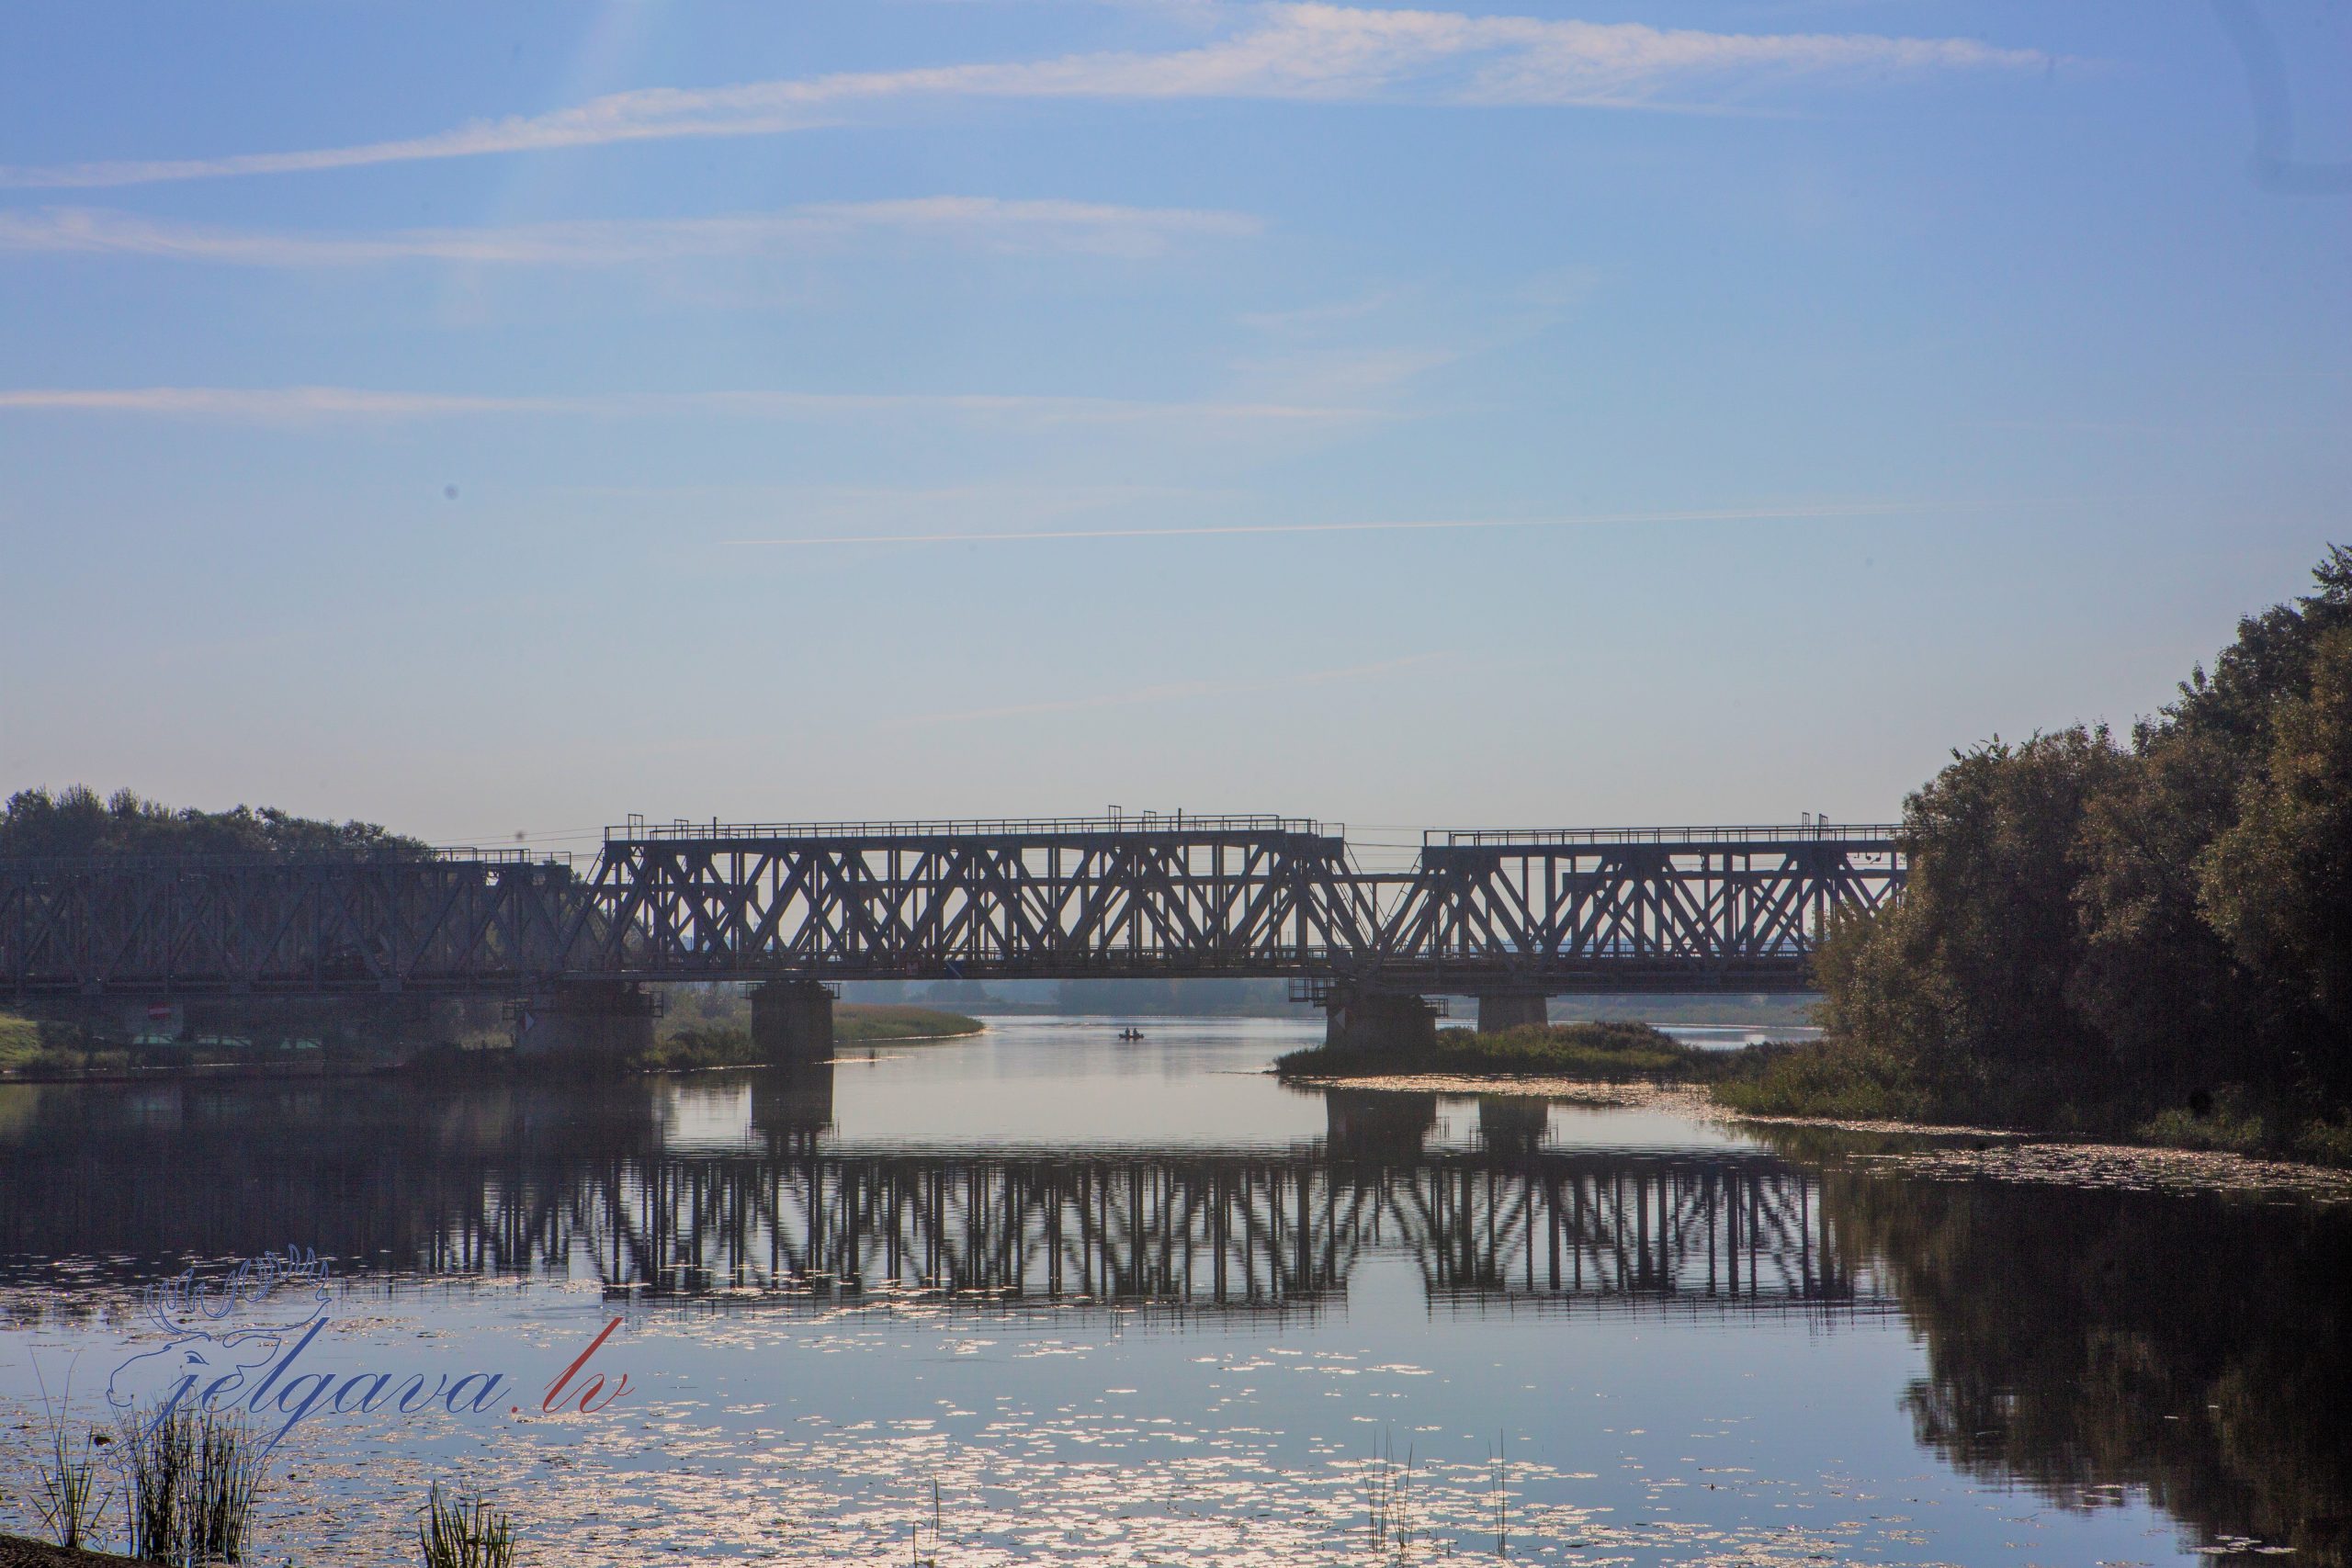 Jelgavas dzelzceļa tilts